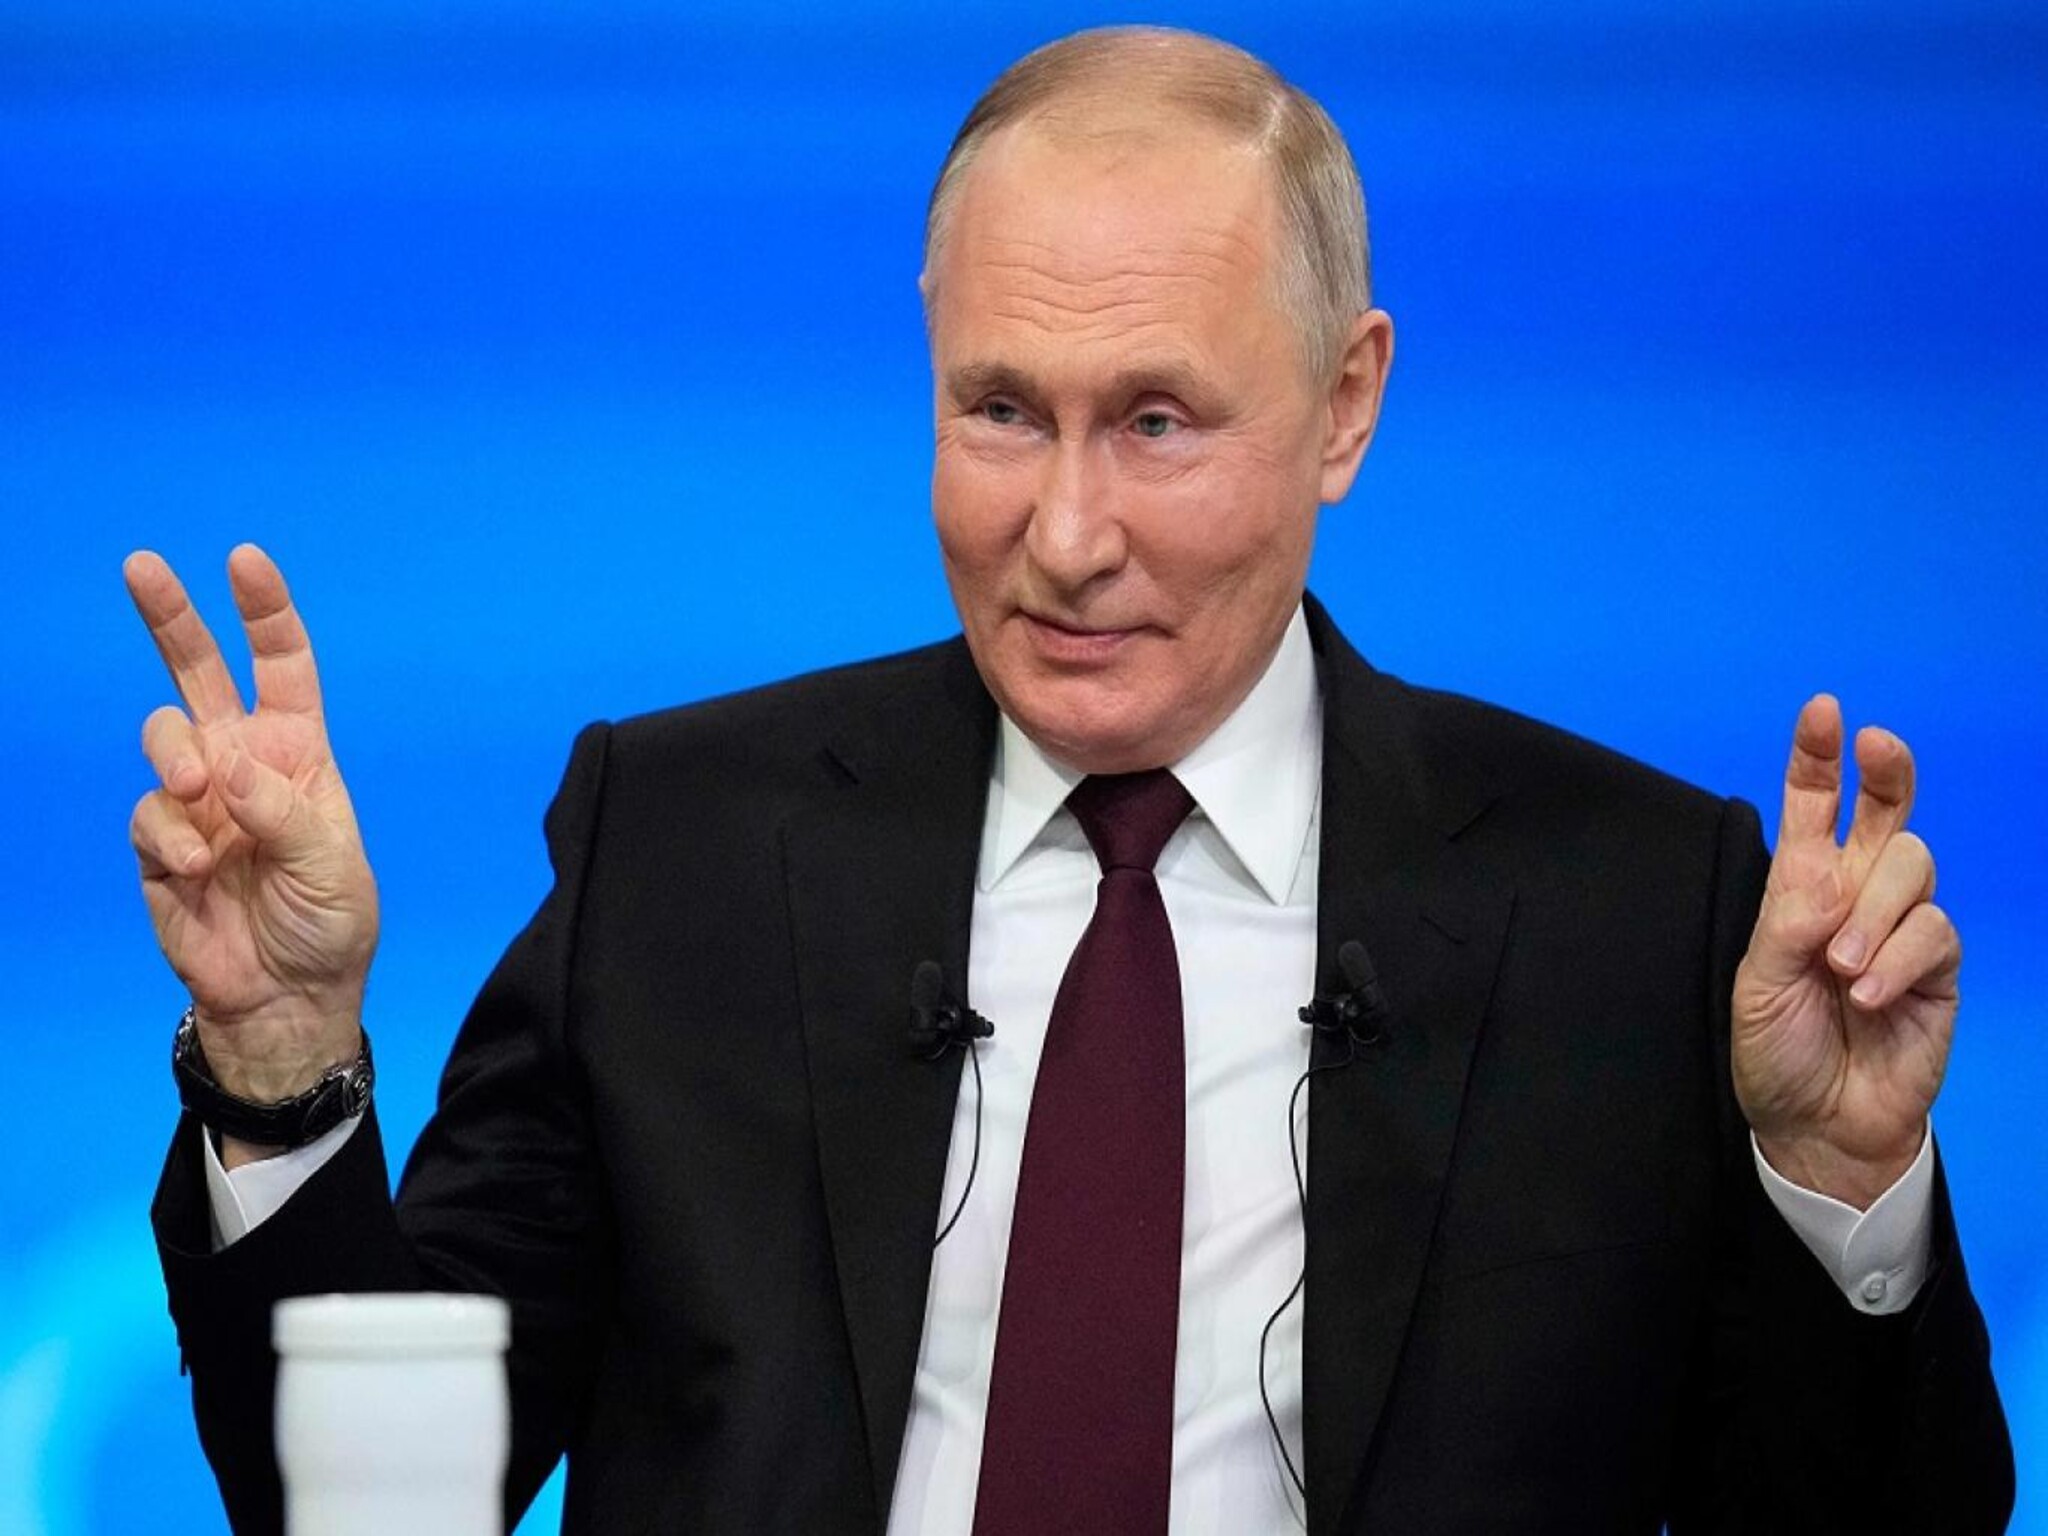 الرئيس الروسي فلاديمير بوتين يترشح مجدداً للرئاسة مستقل